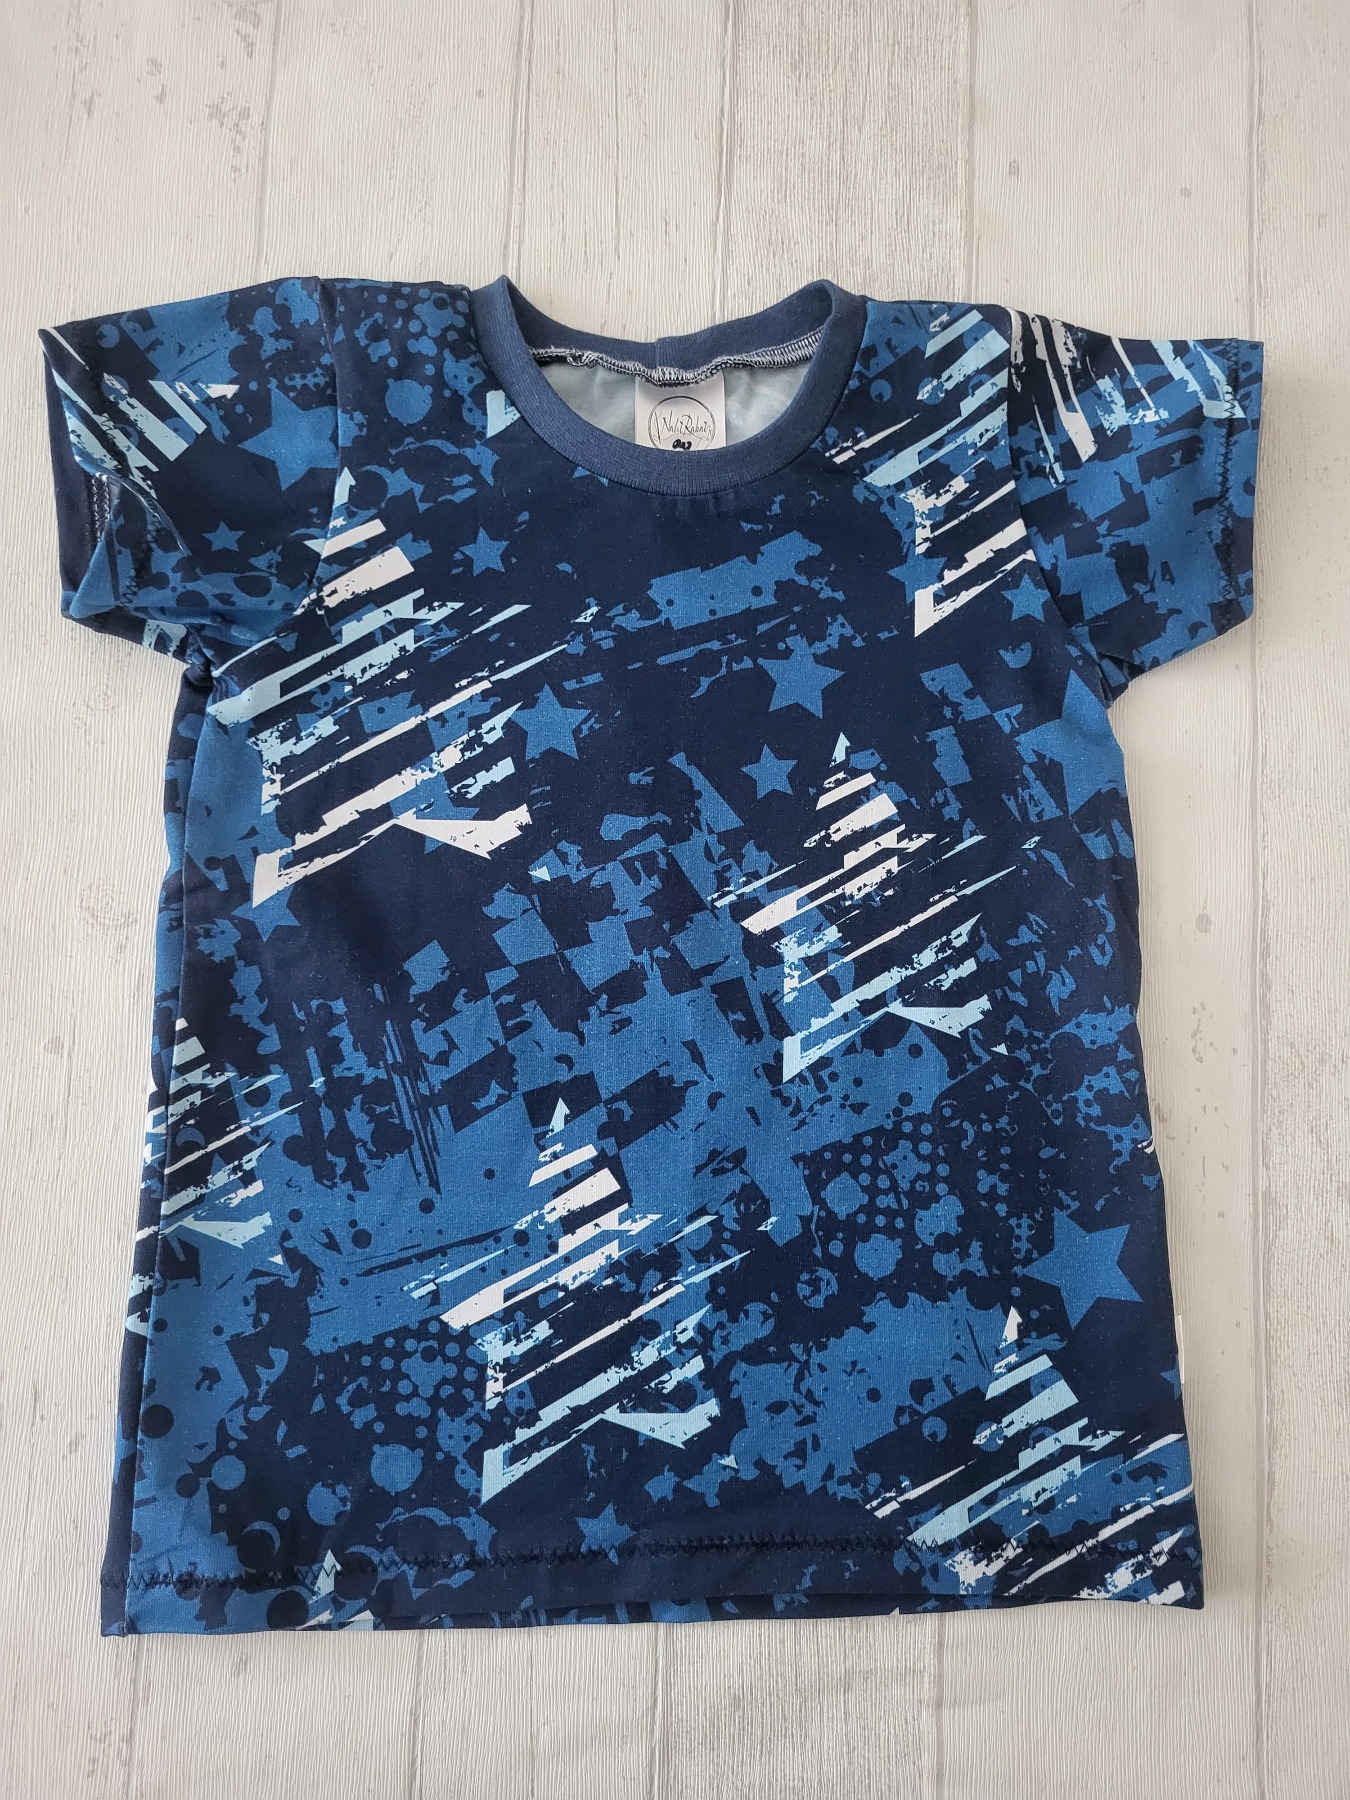 Sofortkauf Handmade T-Shirt kurzarm Sterne blau Gr. 116 von NahtRabatz